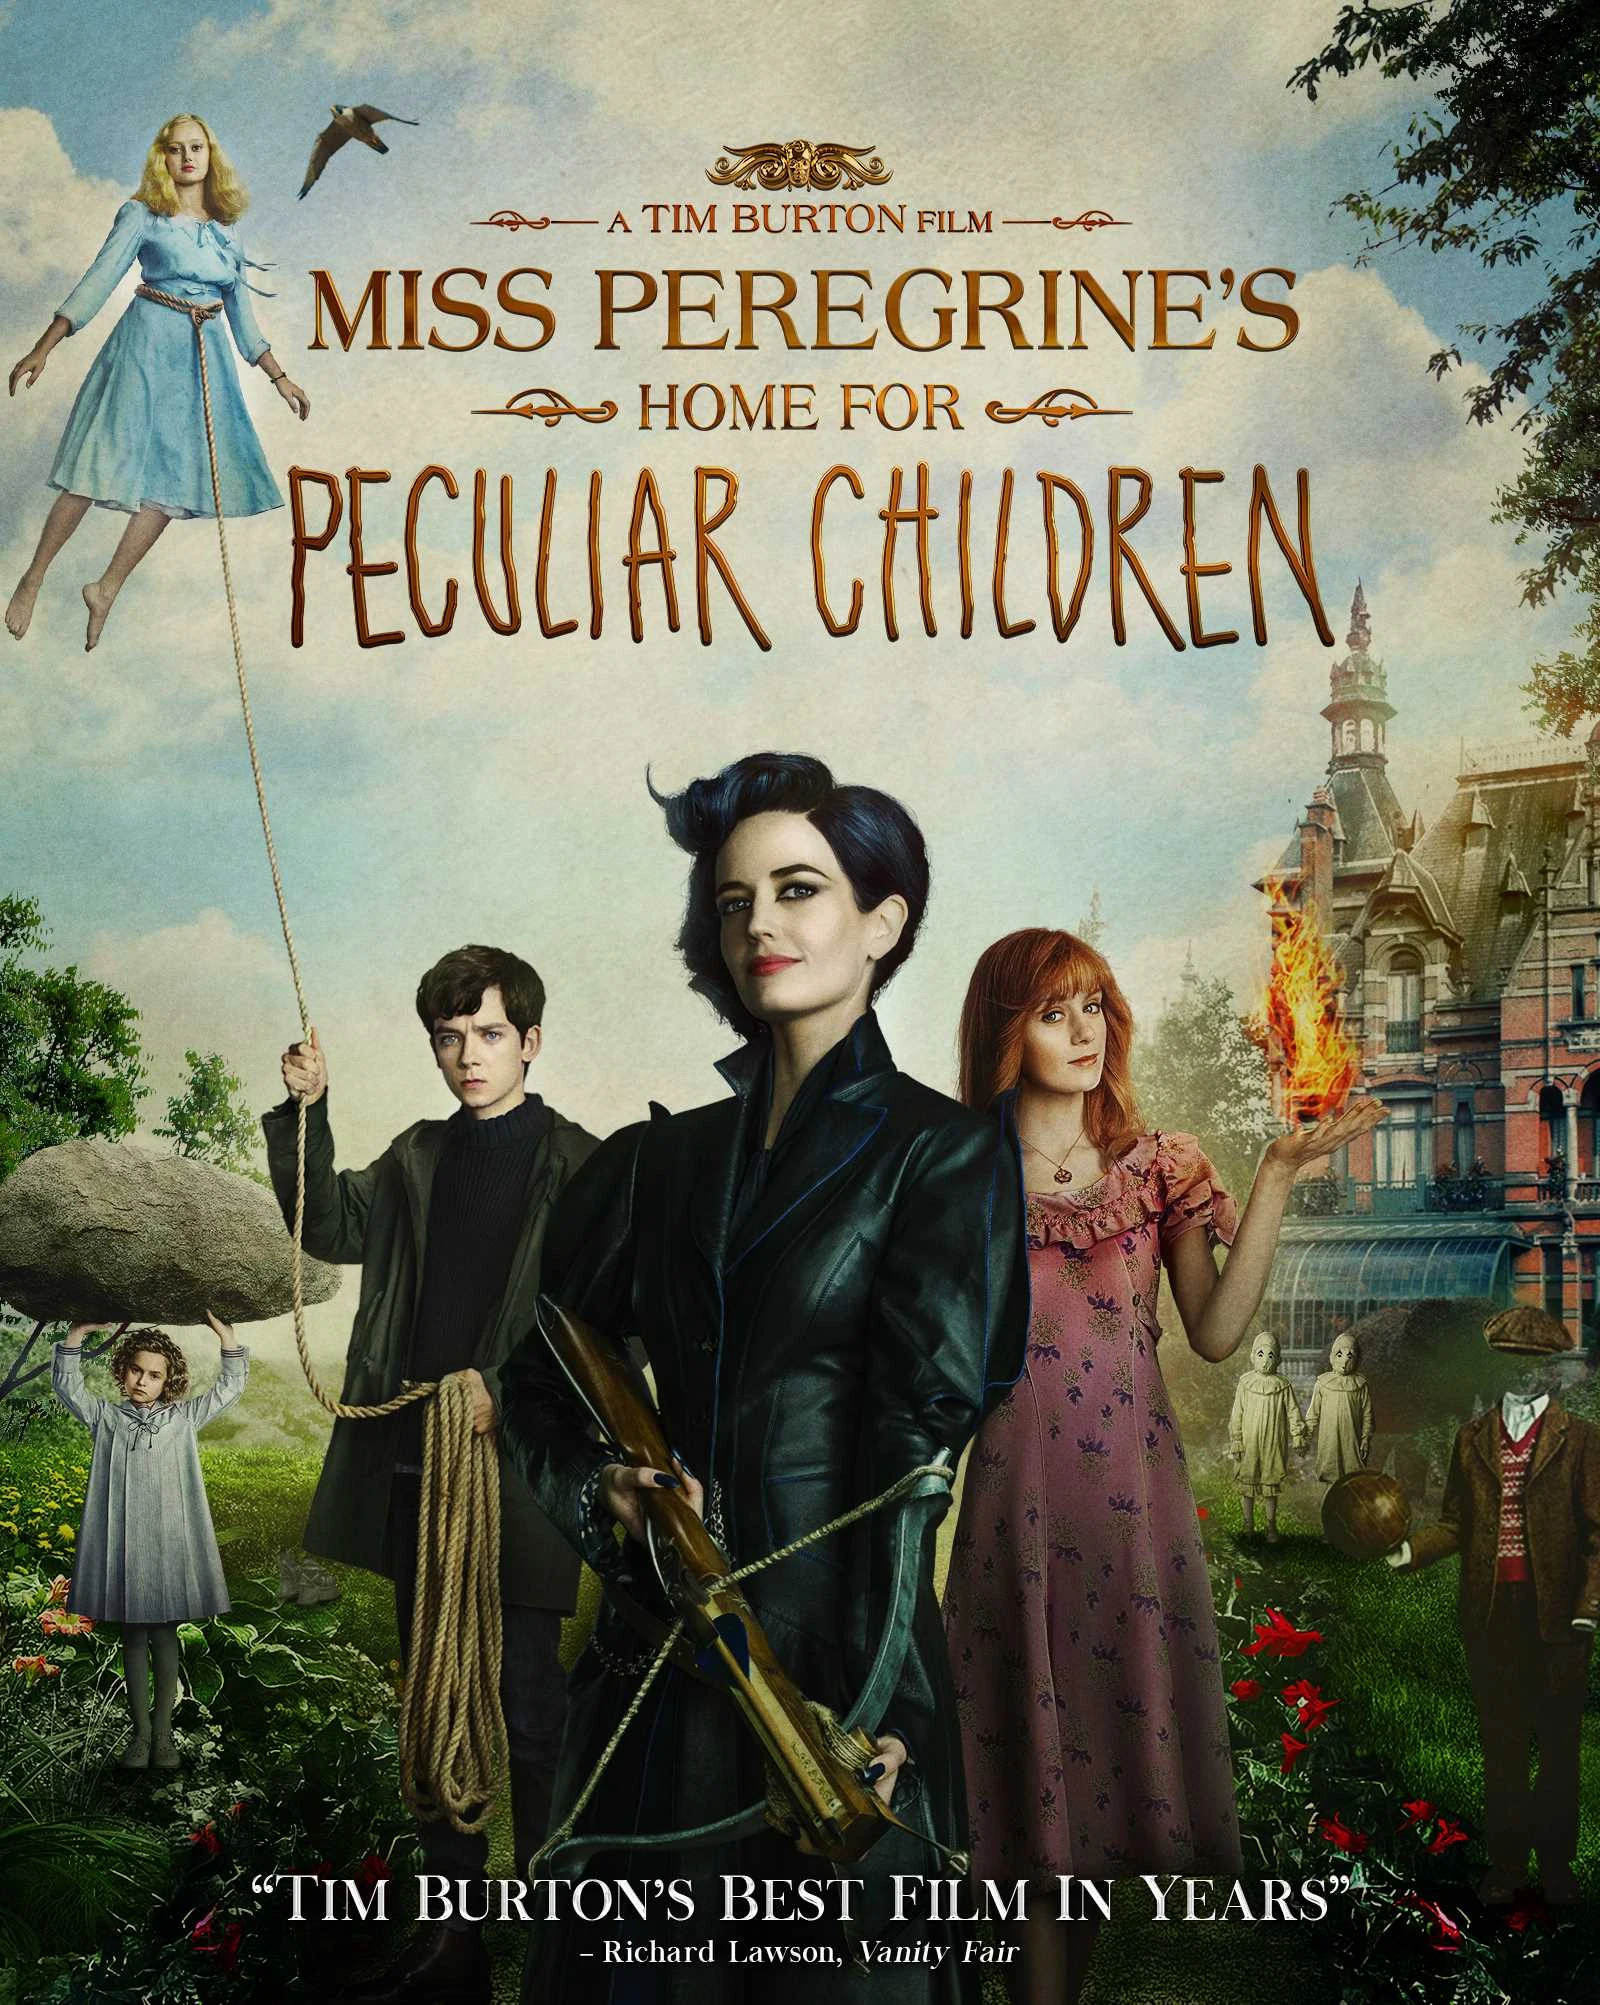 El hogar de Miss Peregrine para niños peculiares